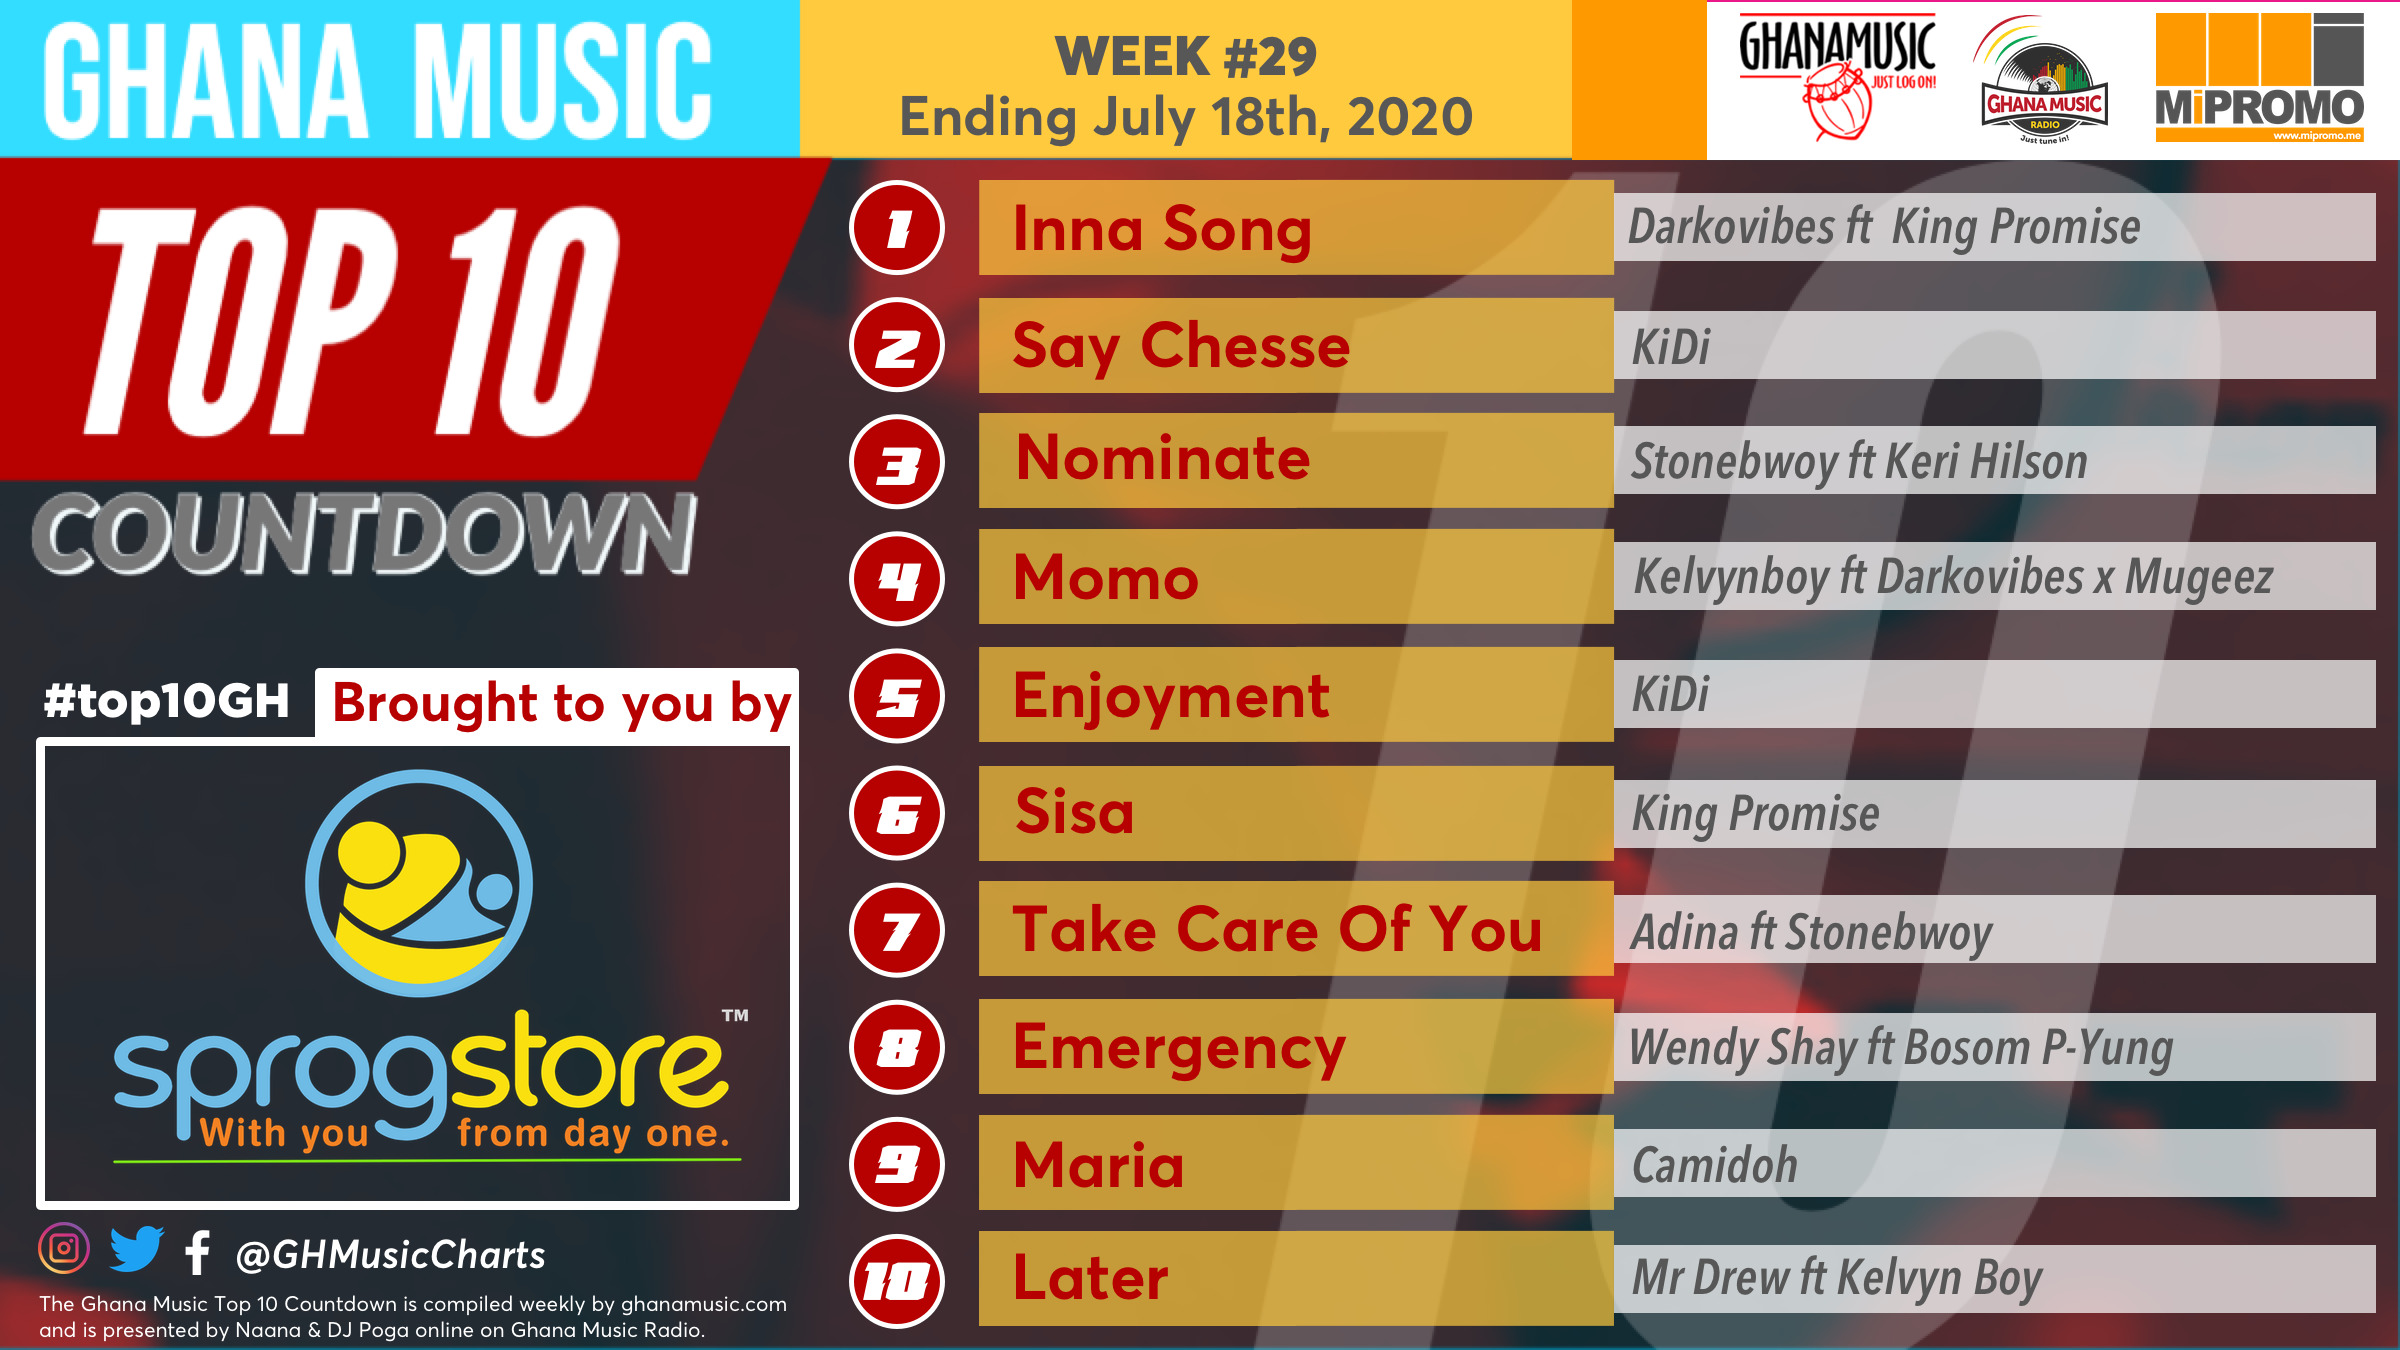 2020 Week 29: Ghana Music Top 10 Countdown